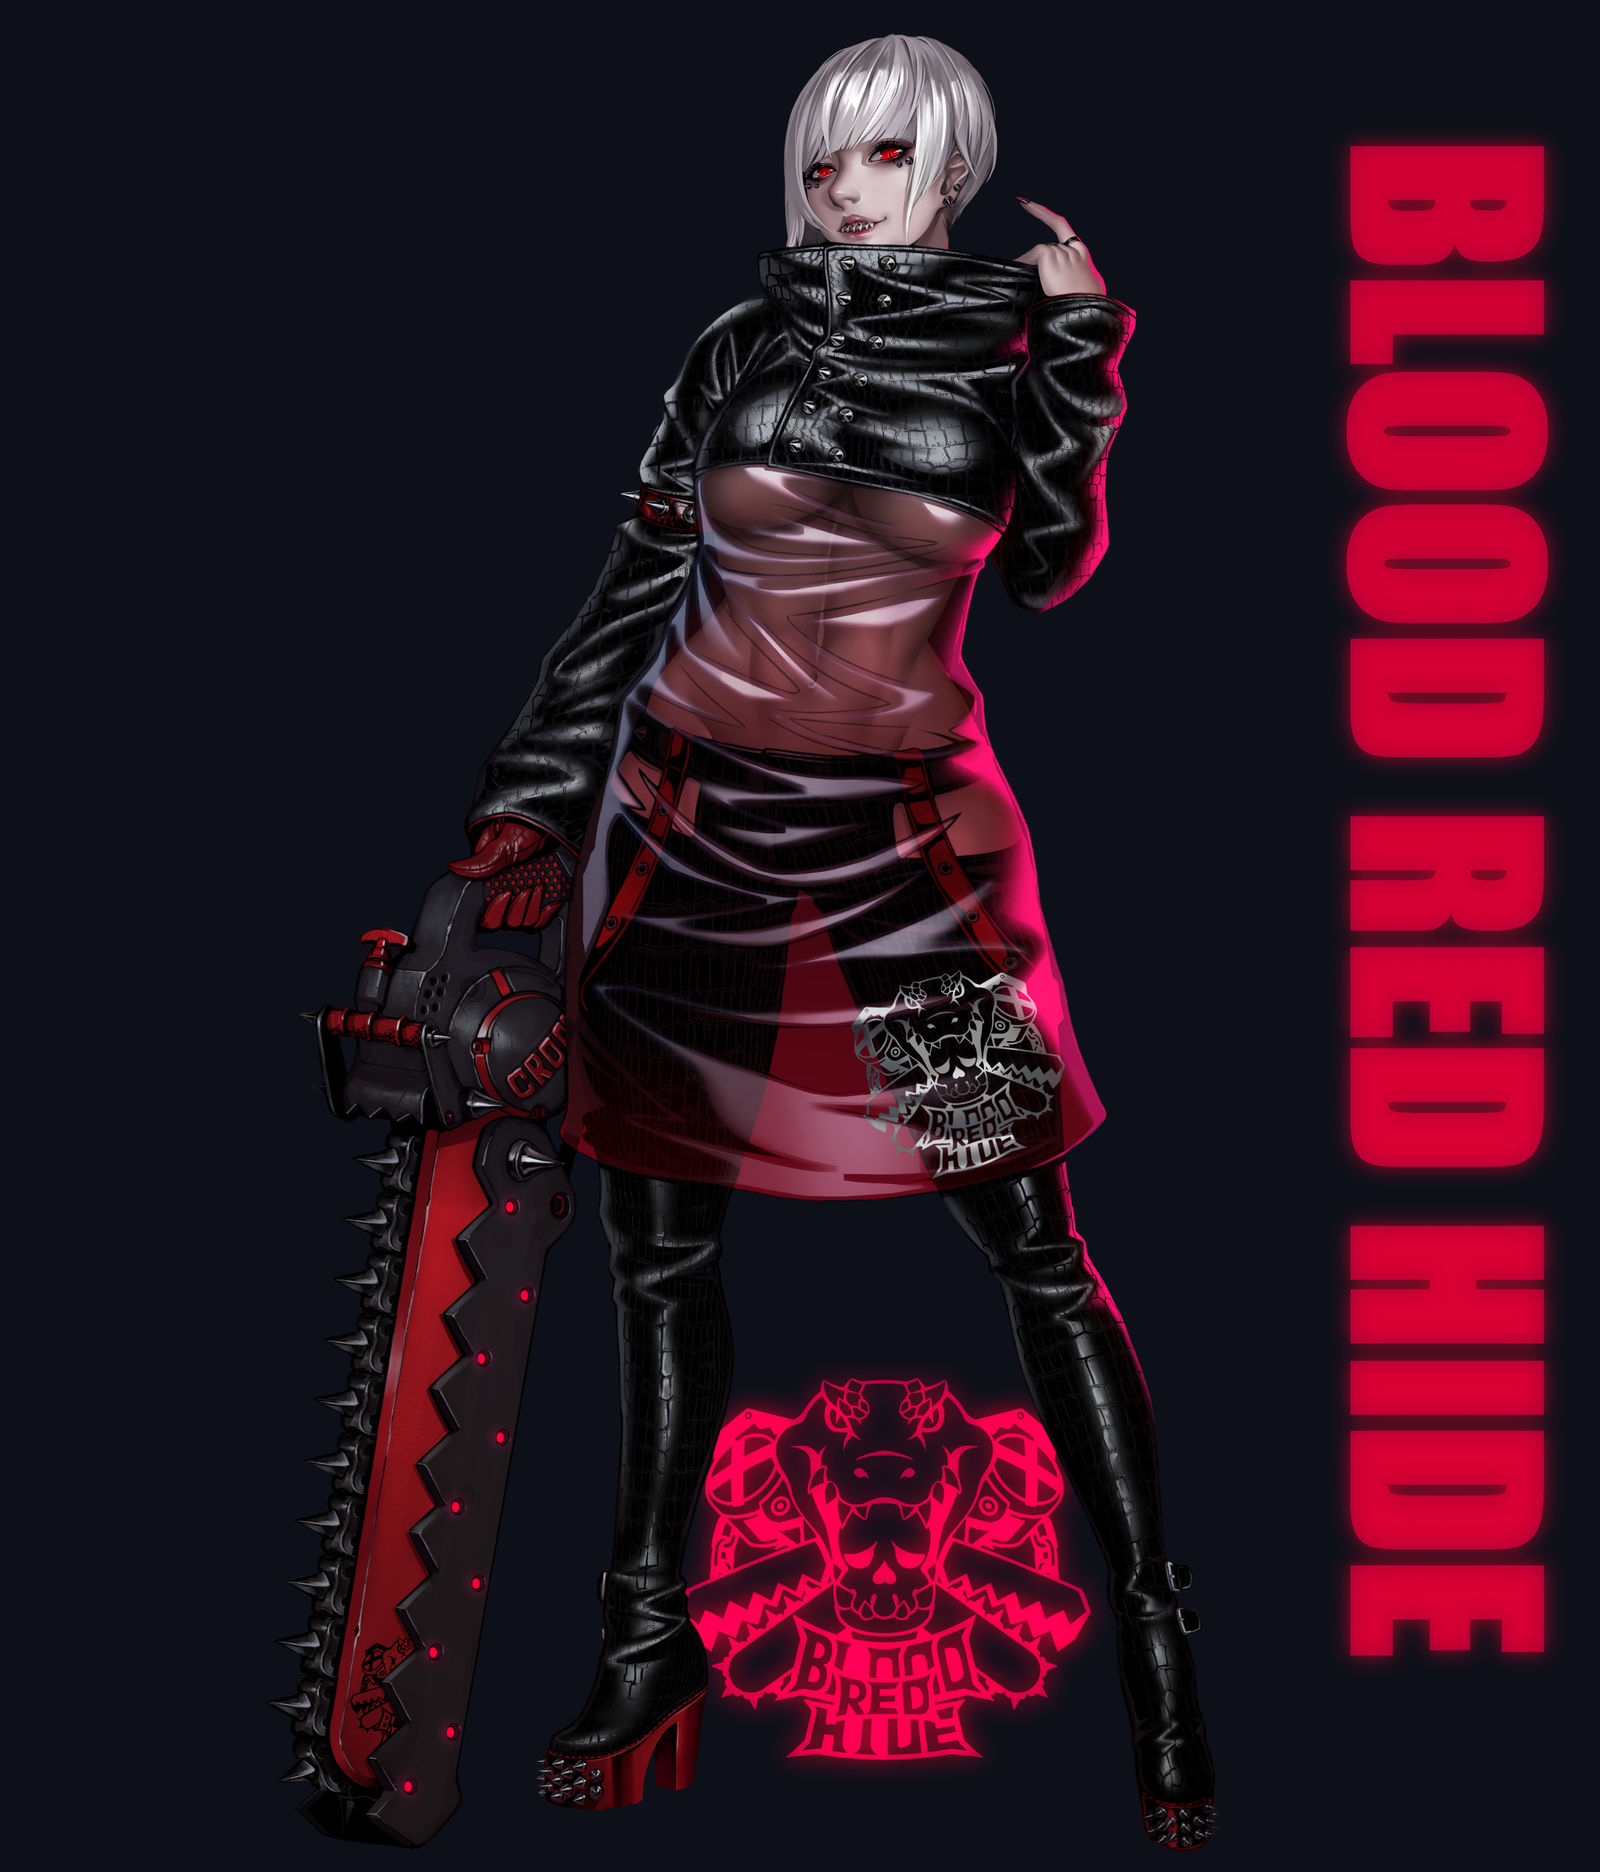 Blood red hide插画图片壁纸